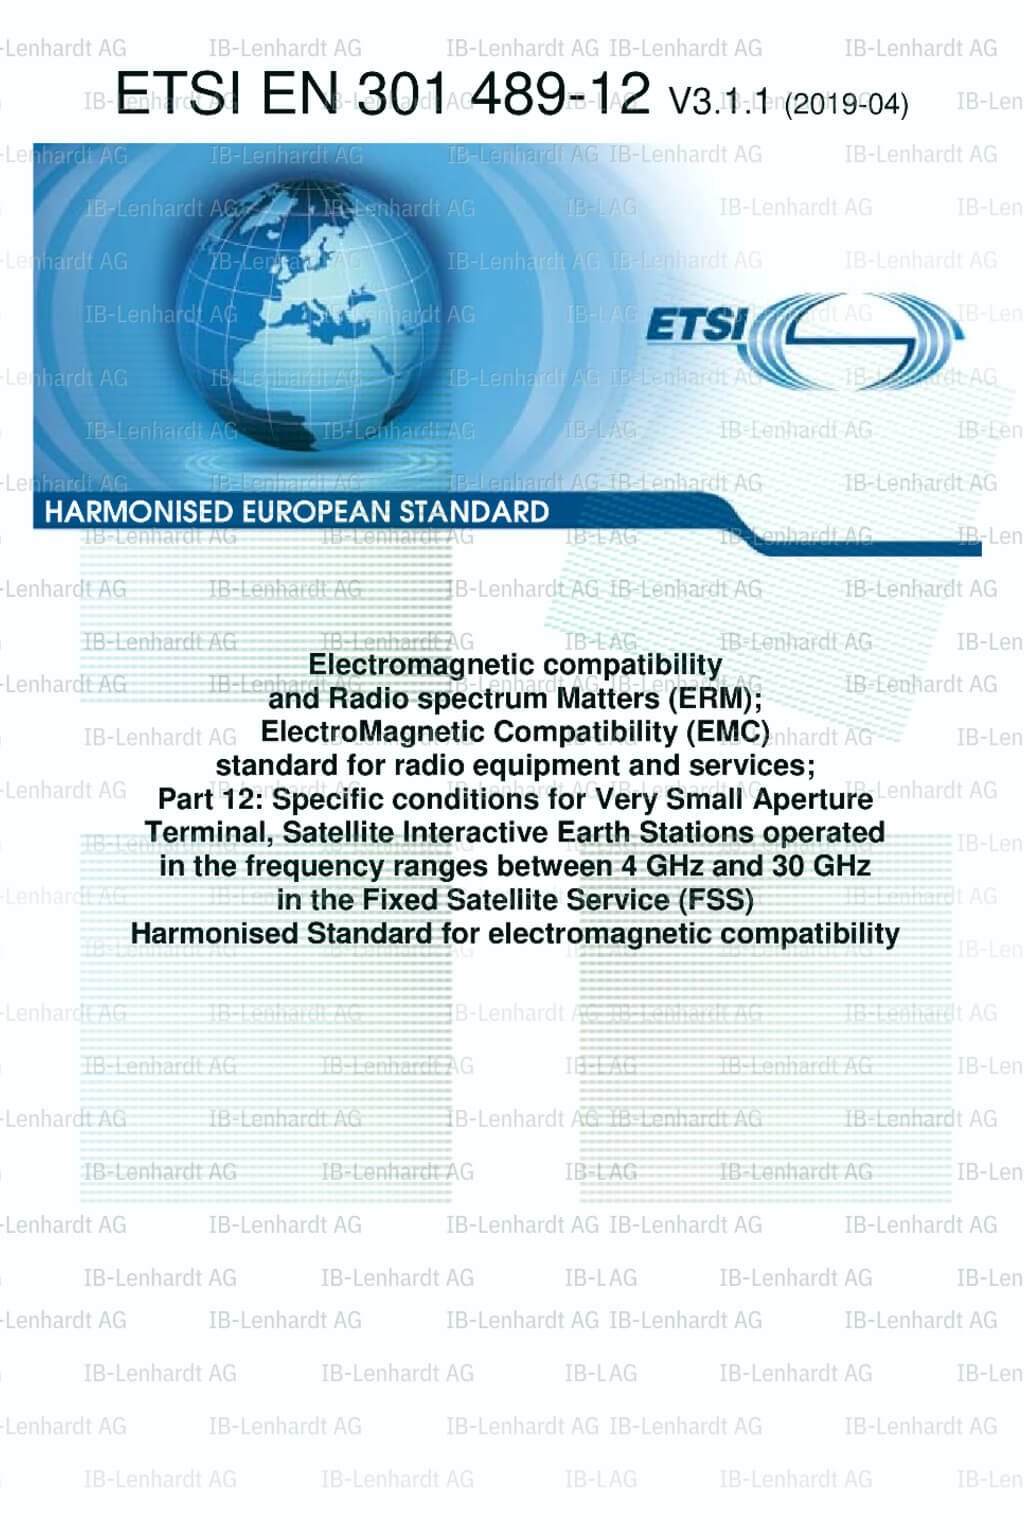 ETSI EN 301 489-12 V3.1.1